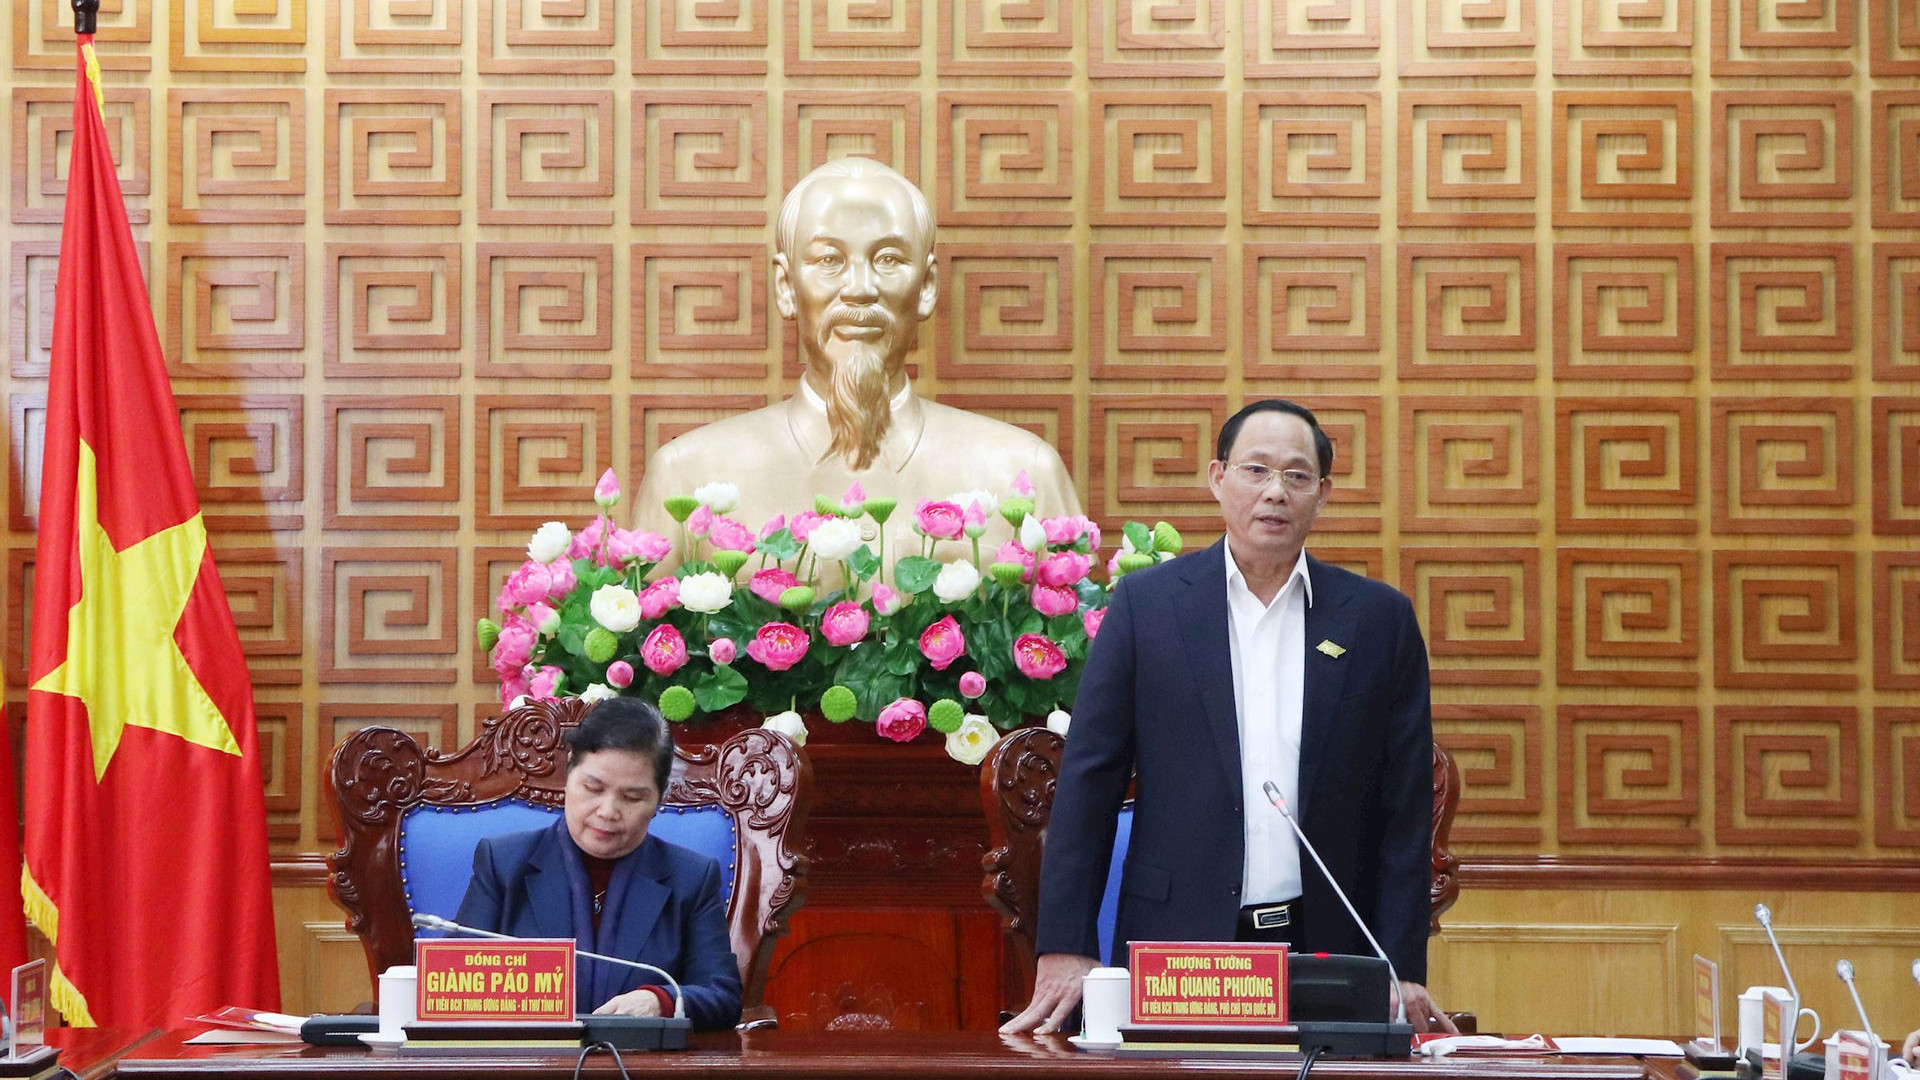 Phó Chủ tịch Quốc hội Trần Quang Phương thăm, làm việc tại Lai Châu